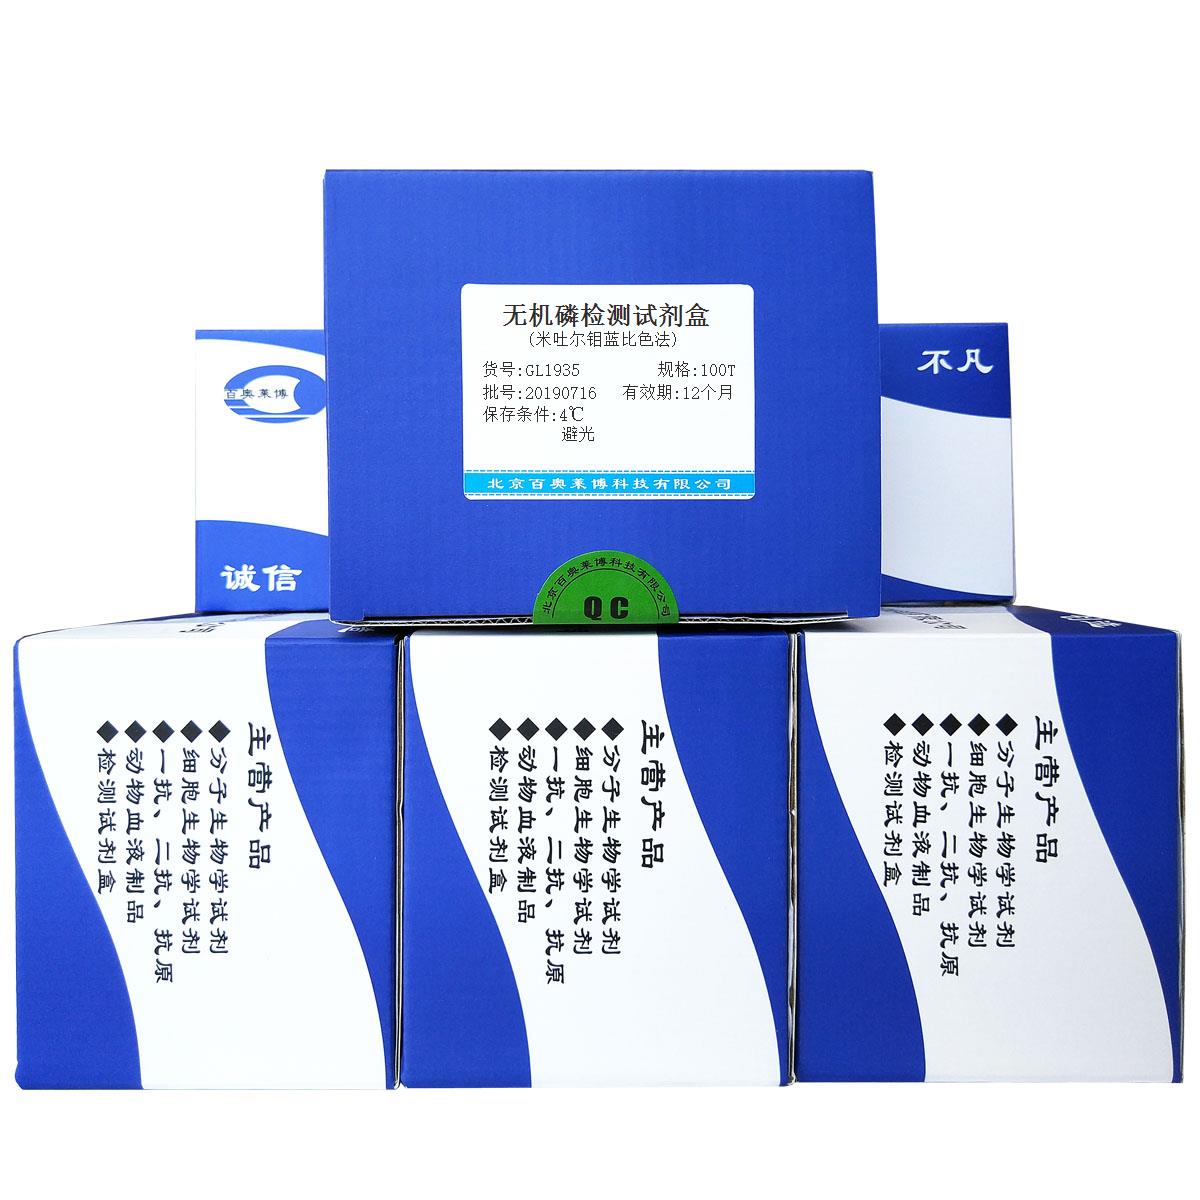 无机磷检测试剂盒(米吐尔钼蓝比色法)优惠促销